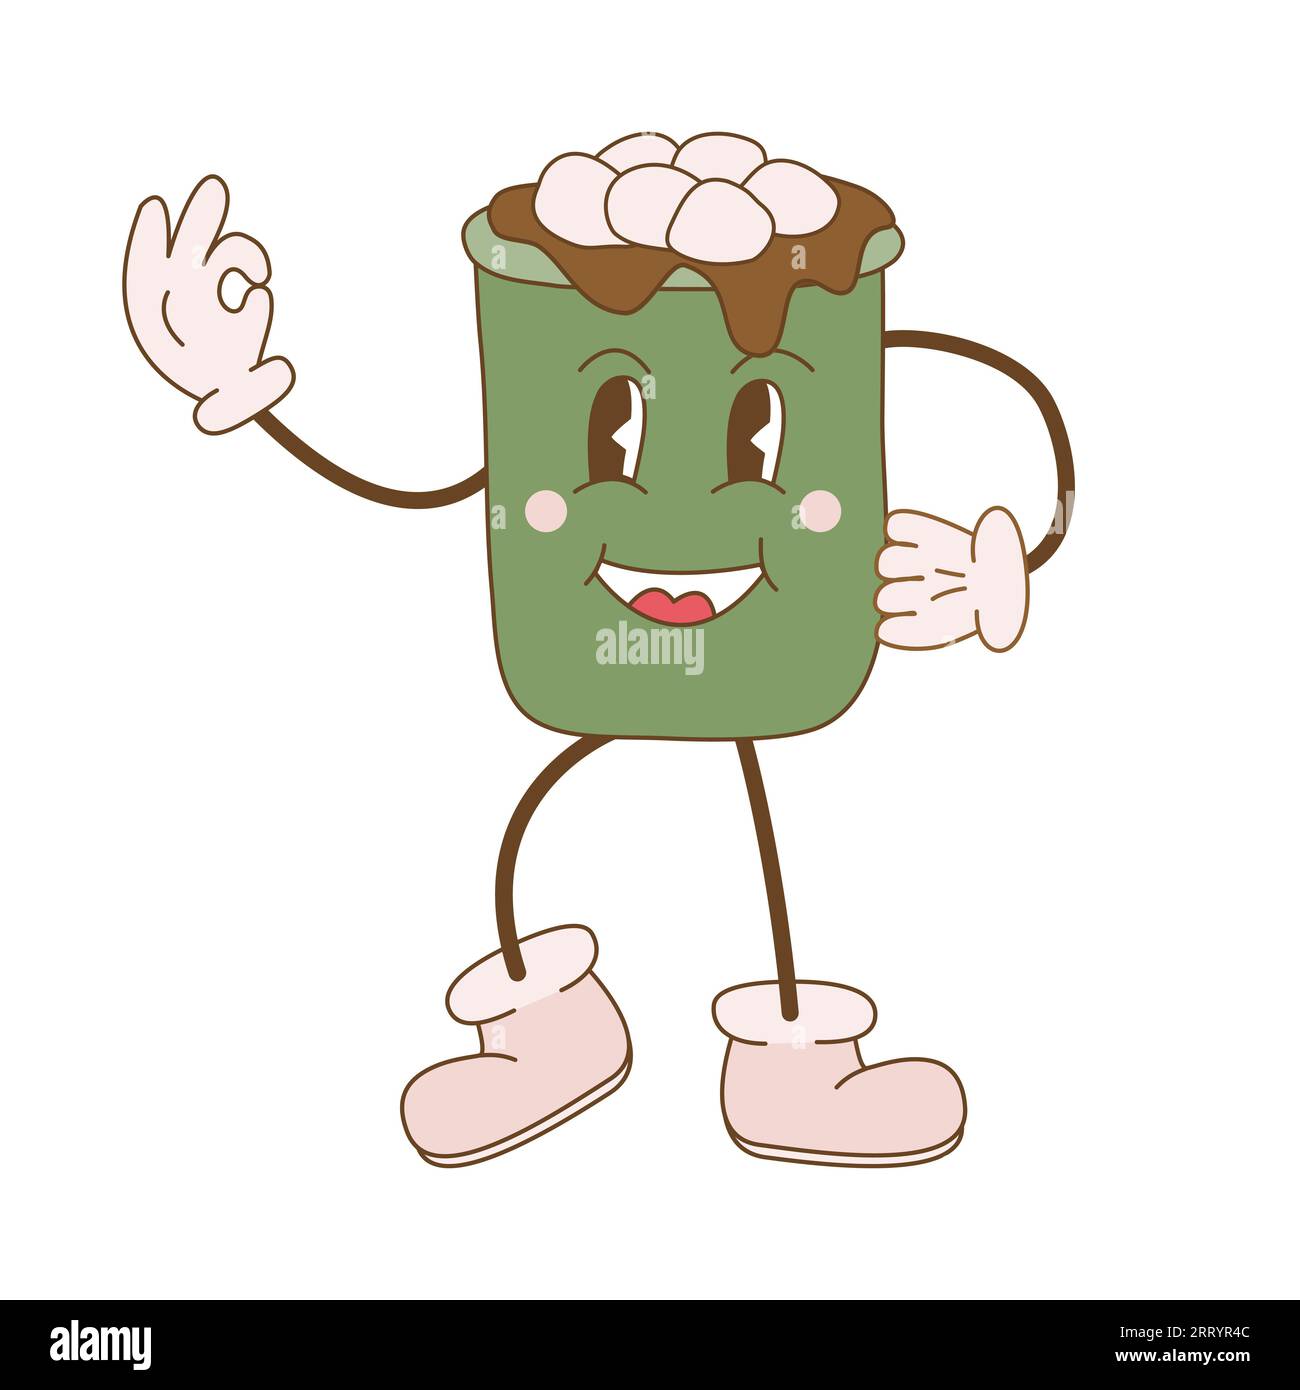 Grooviger Stil heiße Schokolade Tasse nette Zeichentrickfigur mit Gesicht, Armen und Beinen, zeigt ok Zeichen, Doodle Stil flache Vektor-Illustration Stock Vektor